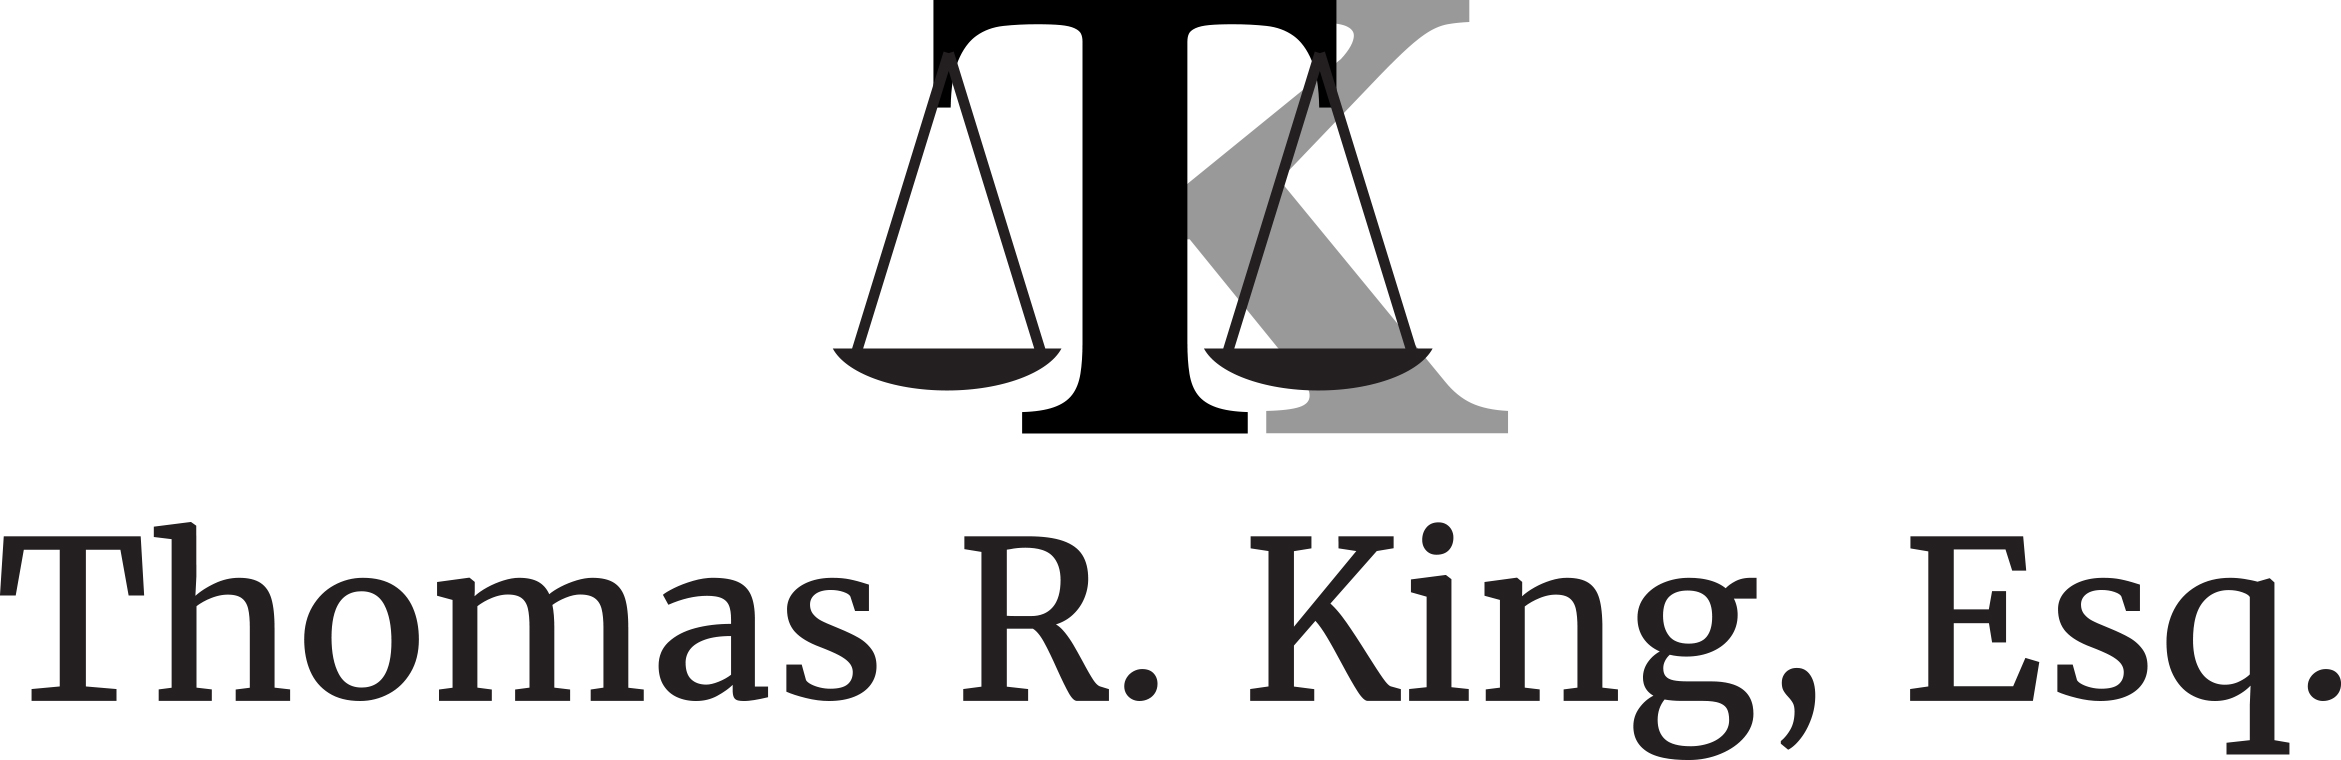 Thomas R. King, Esq. Divorce Law